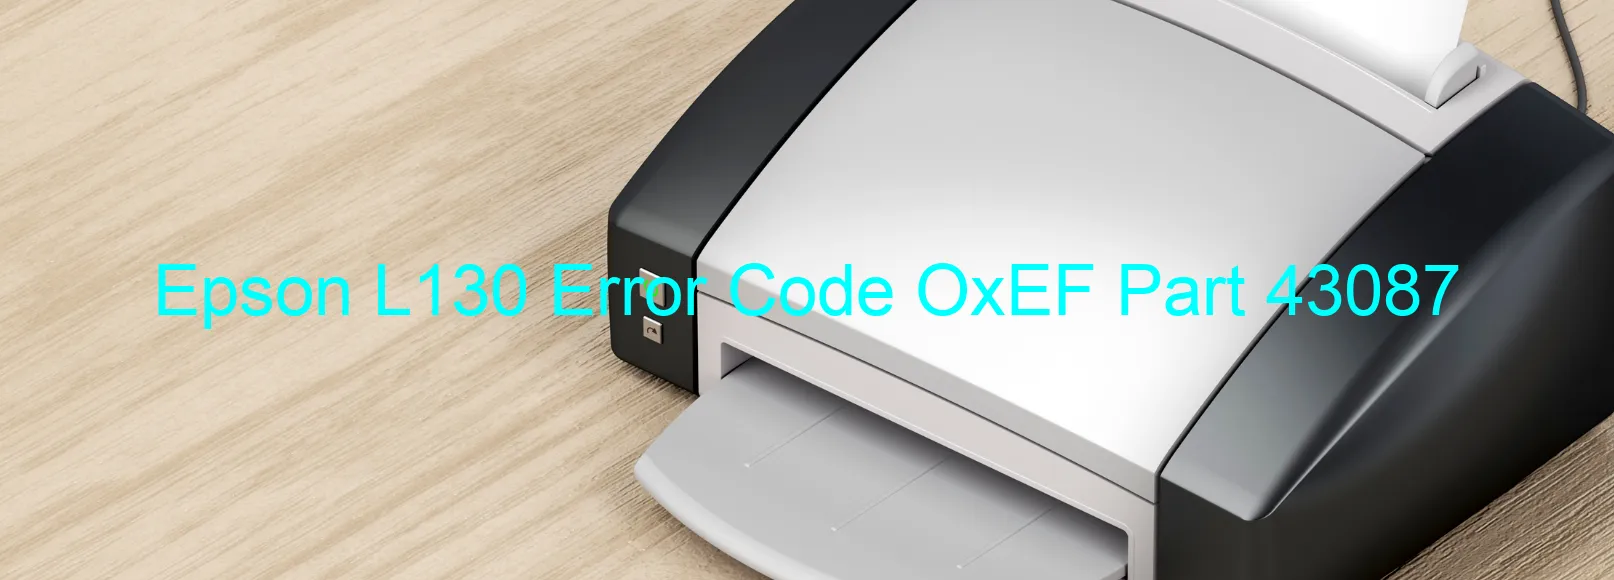 Epson L130 Error Code OxEF Part 43087